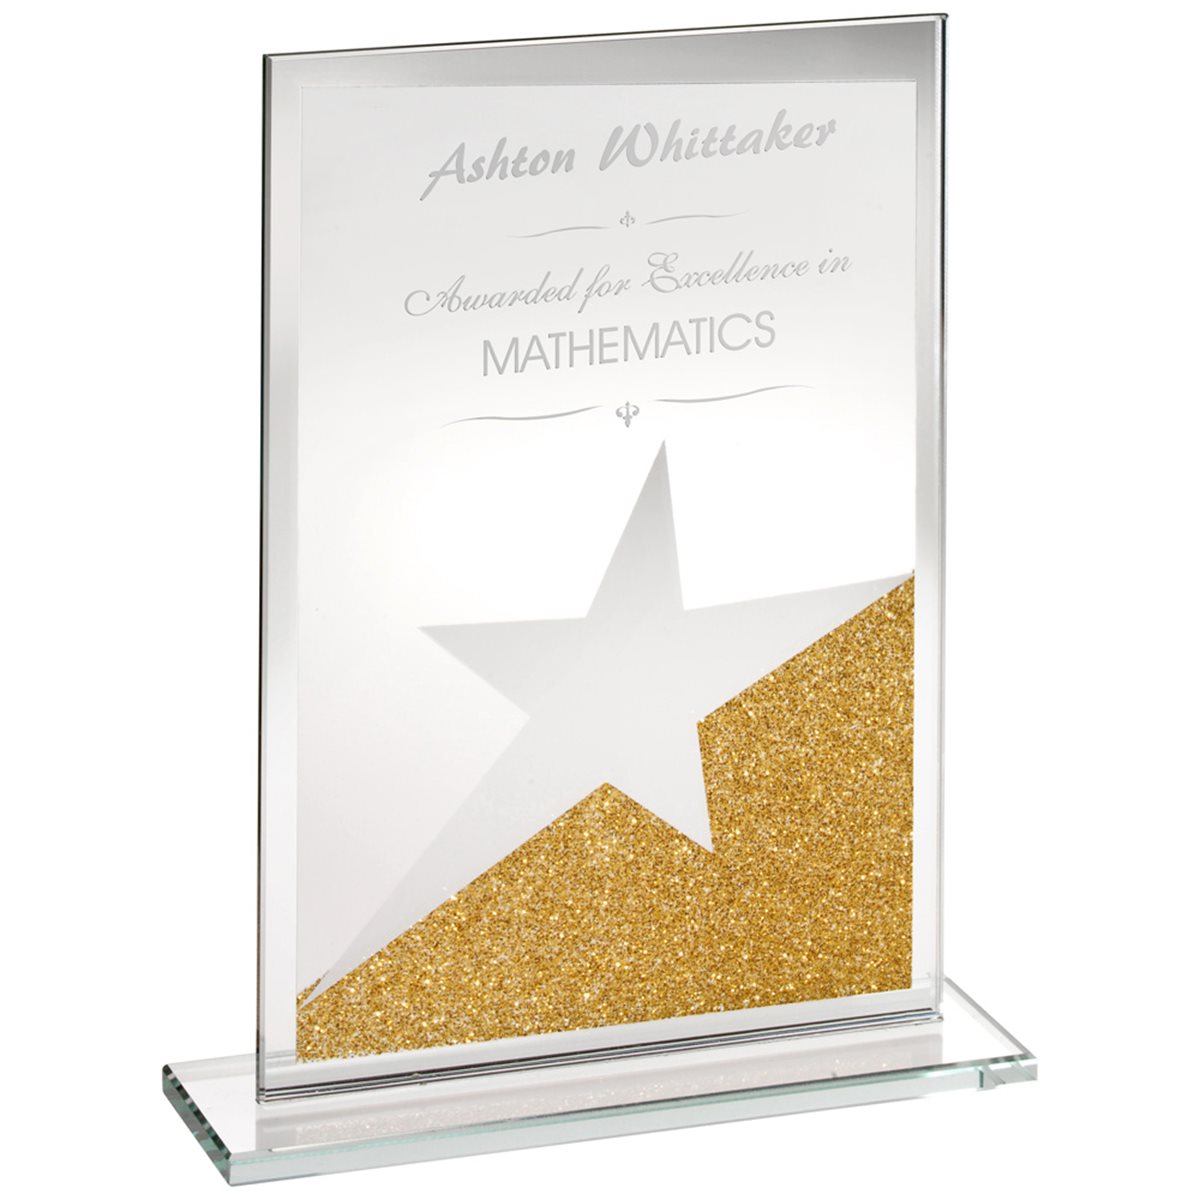 Jade Glass Gold Glitter Star Award SG4